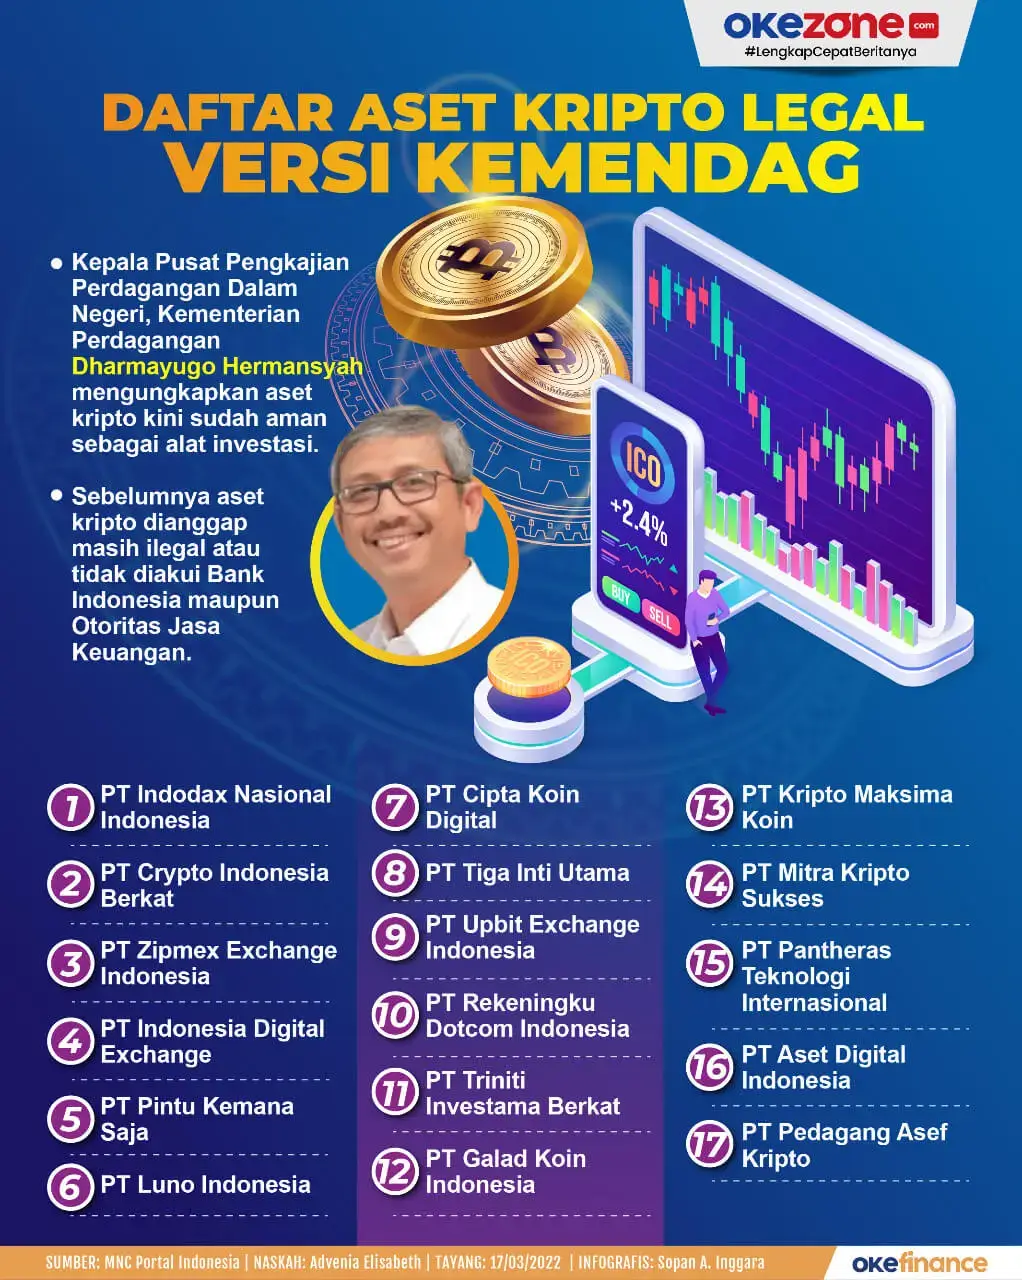 Daftar Aset Kripto Legal di Indonesia